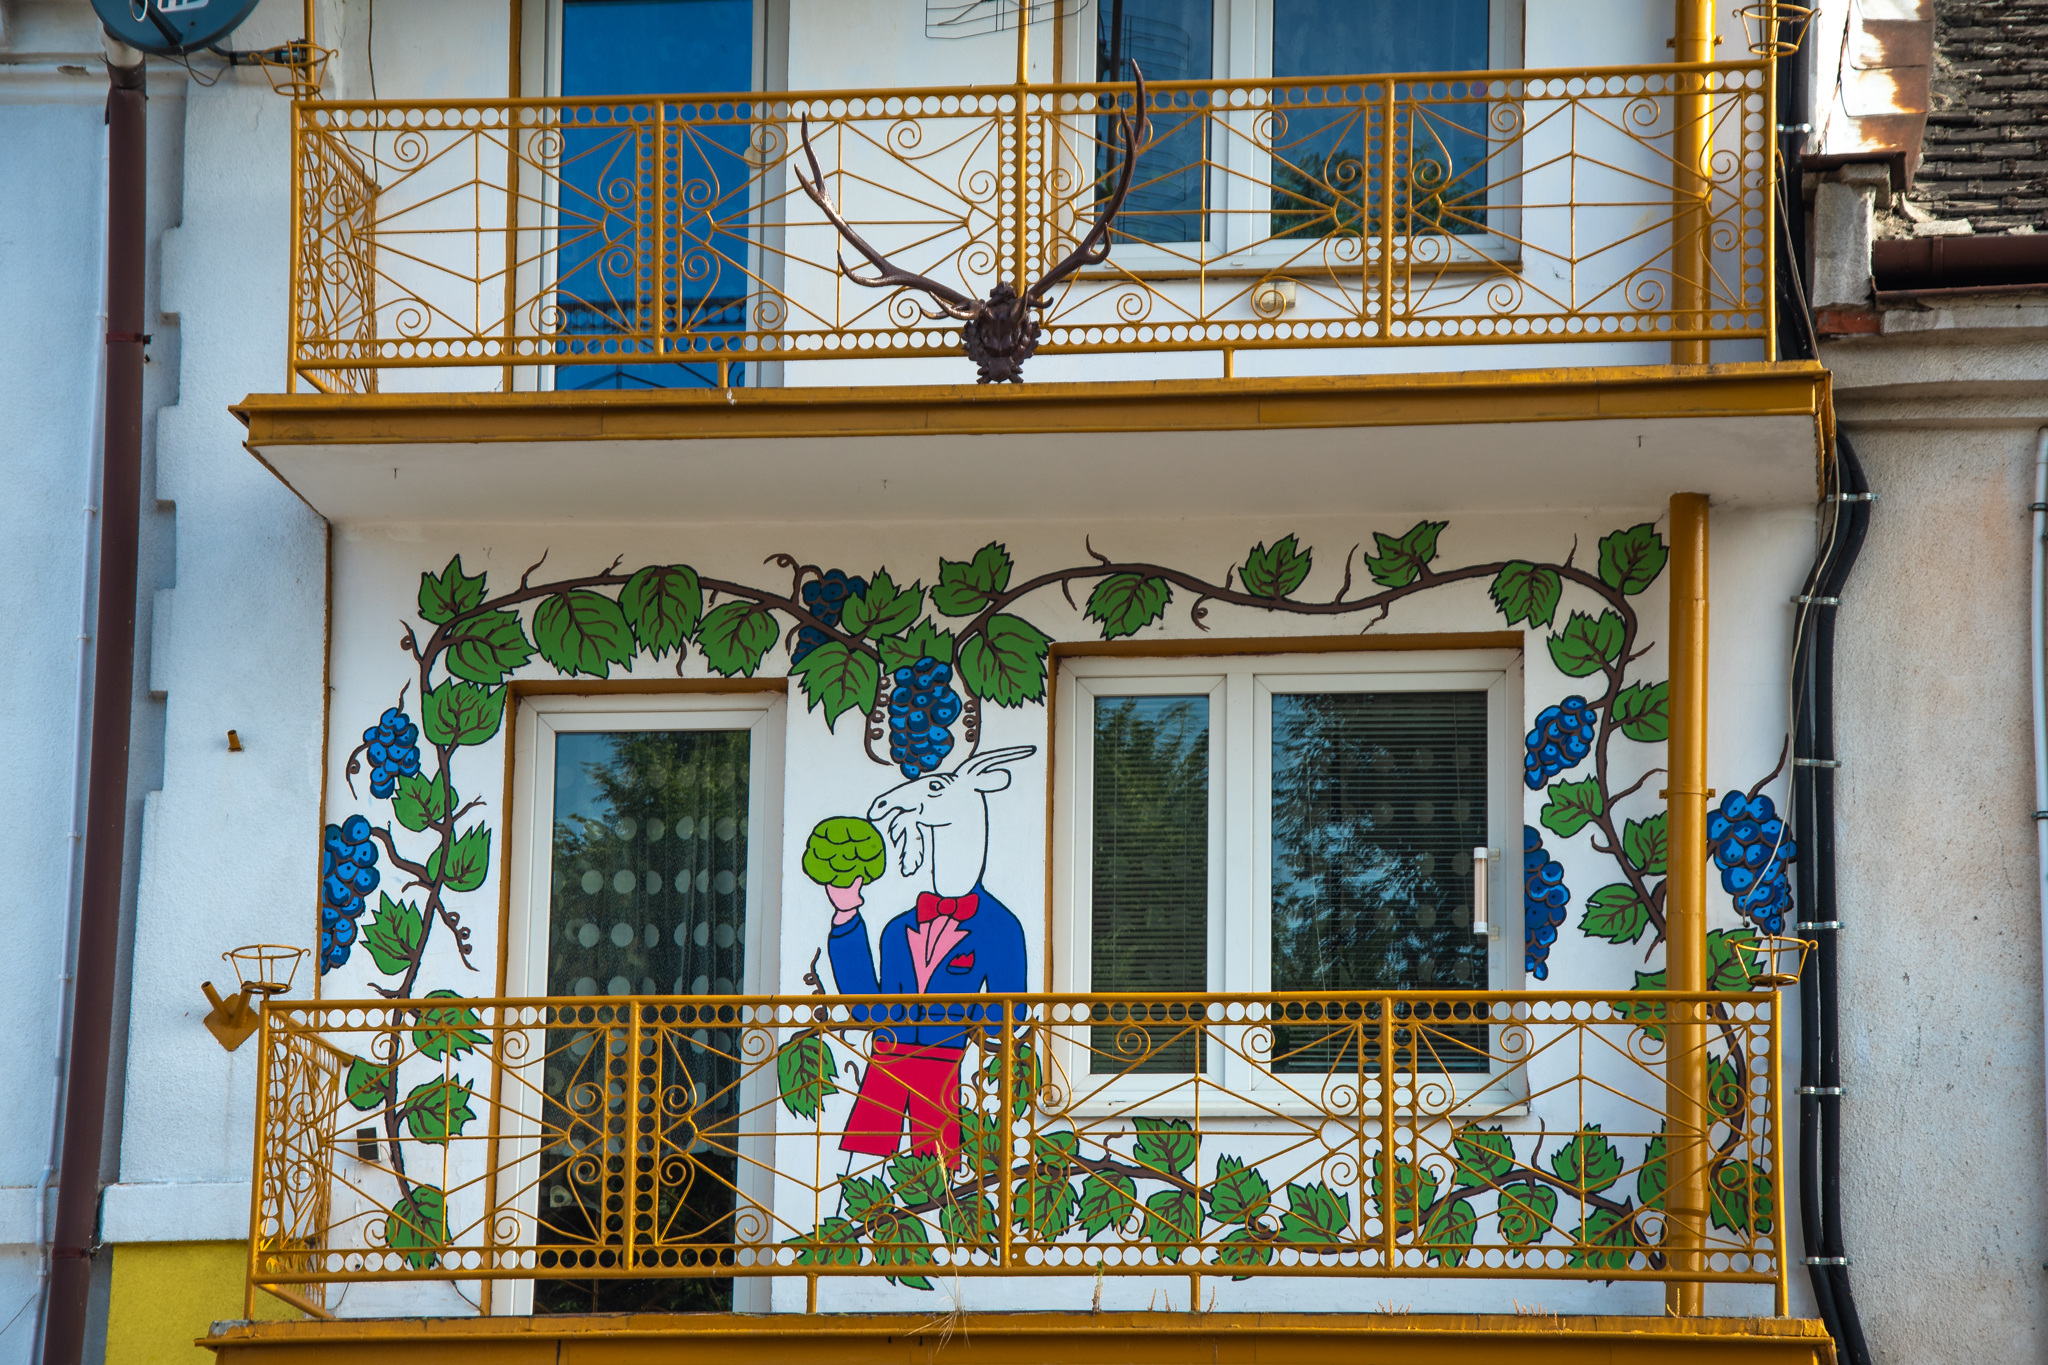 Koziołek Matołek namalowany na murze domu wokół balkonów, dookoła dorysowane winogrona.